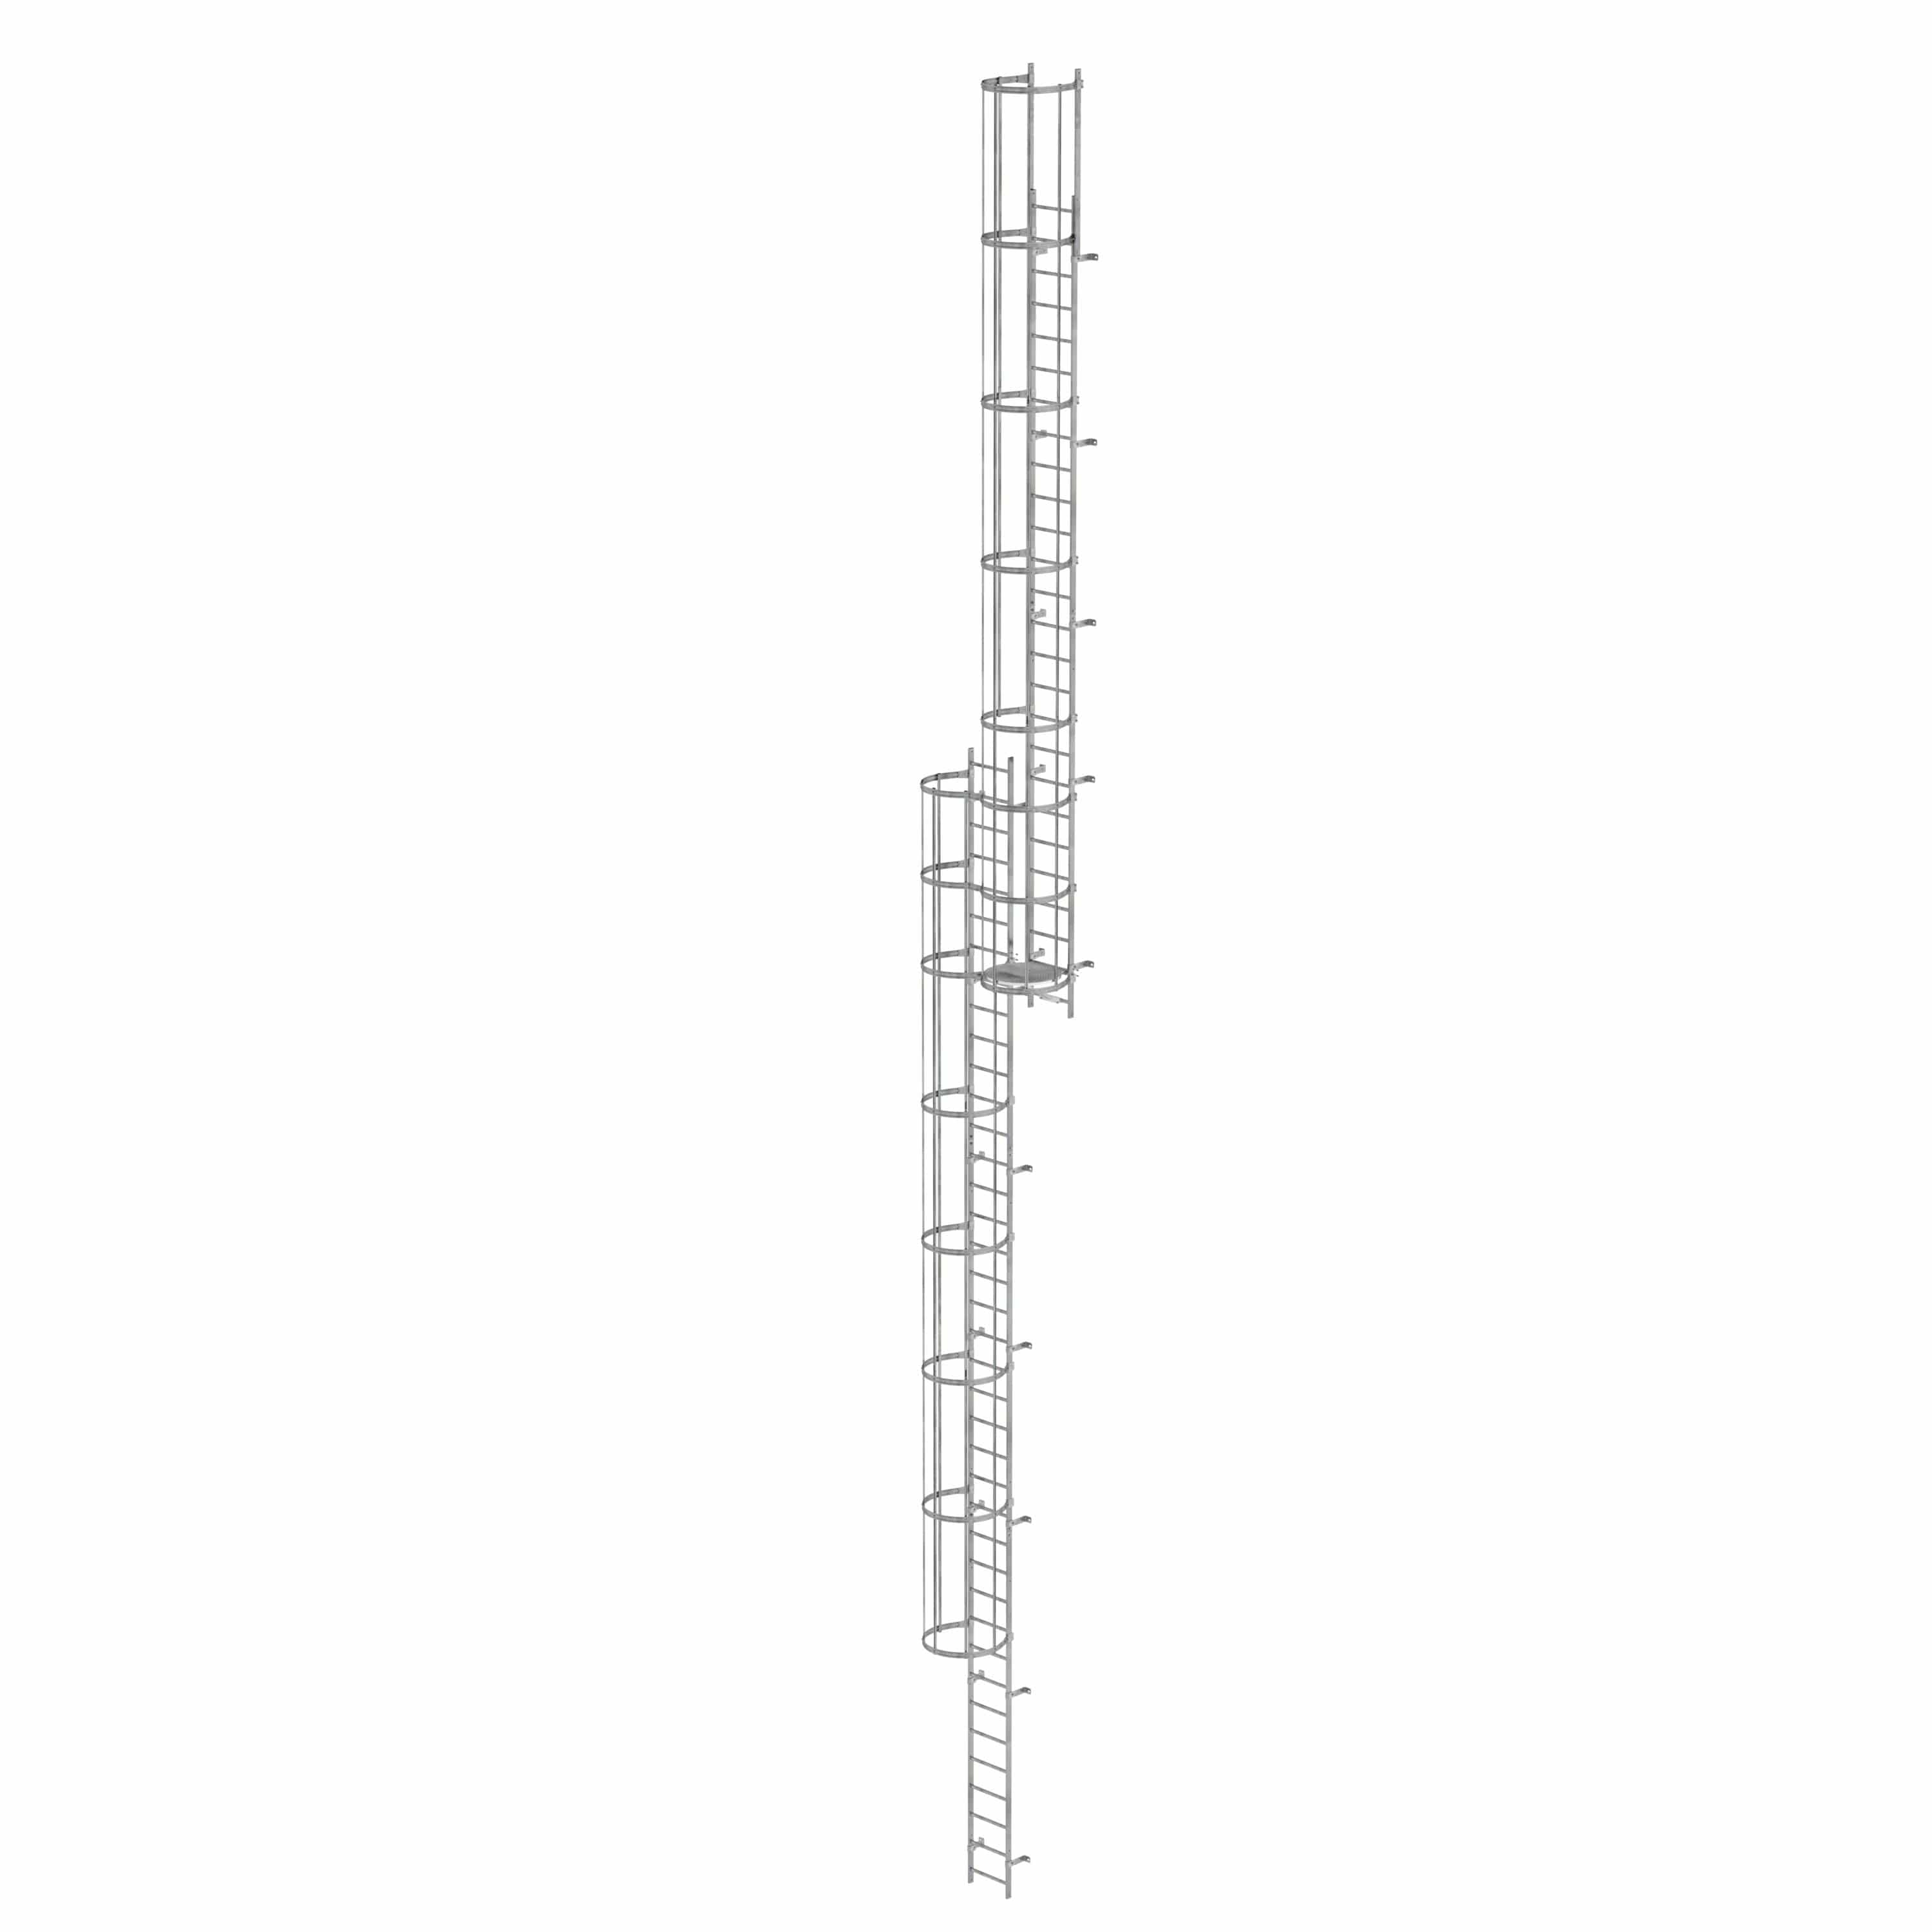 Munk Mehrzügige Steigleiter mit Rückenschutz (Bau) Stahl verzinkt 17,16m